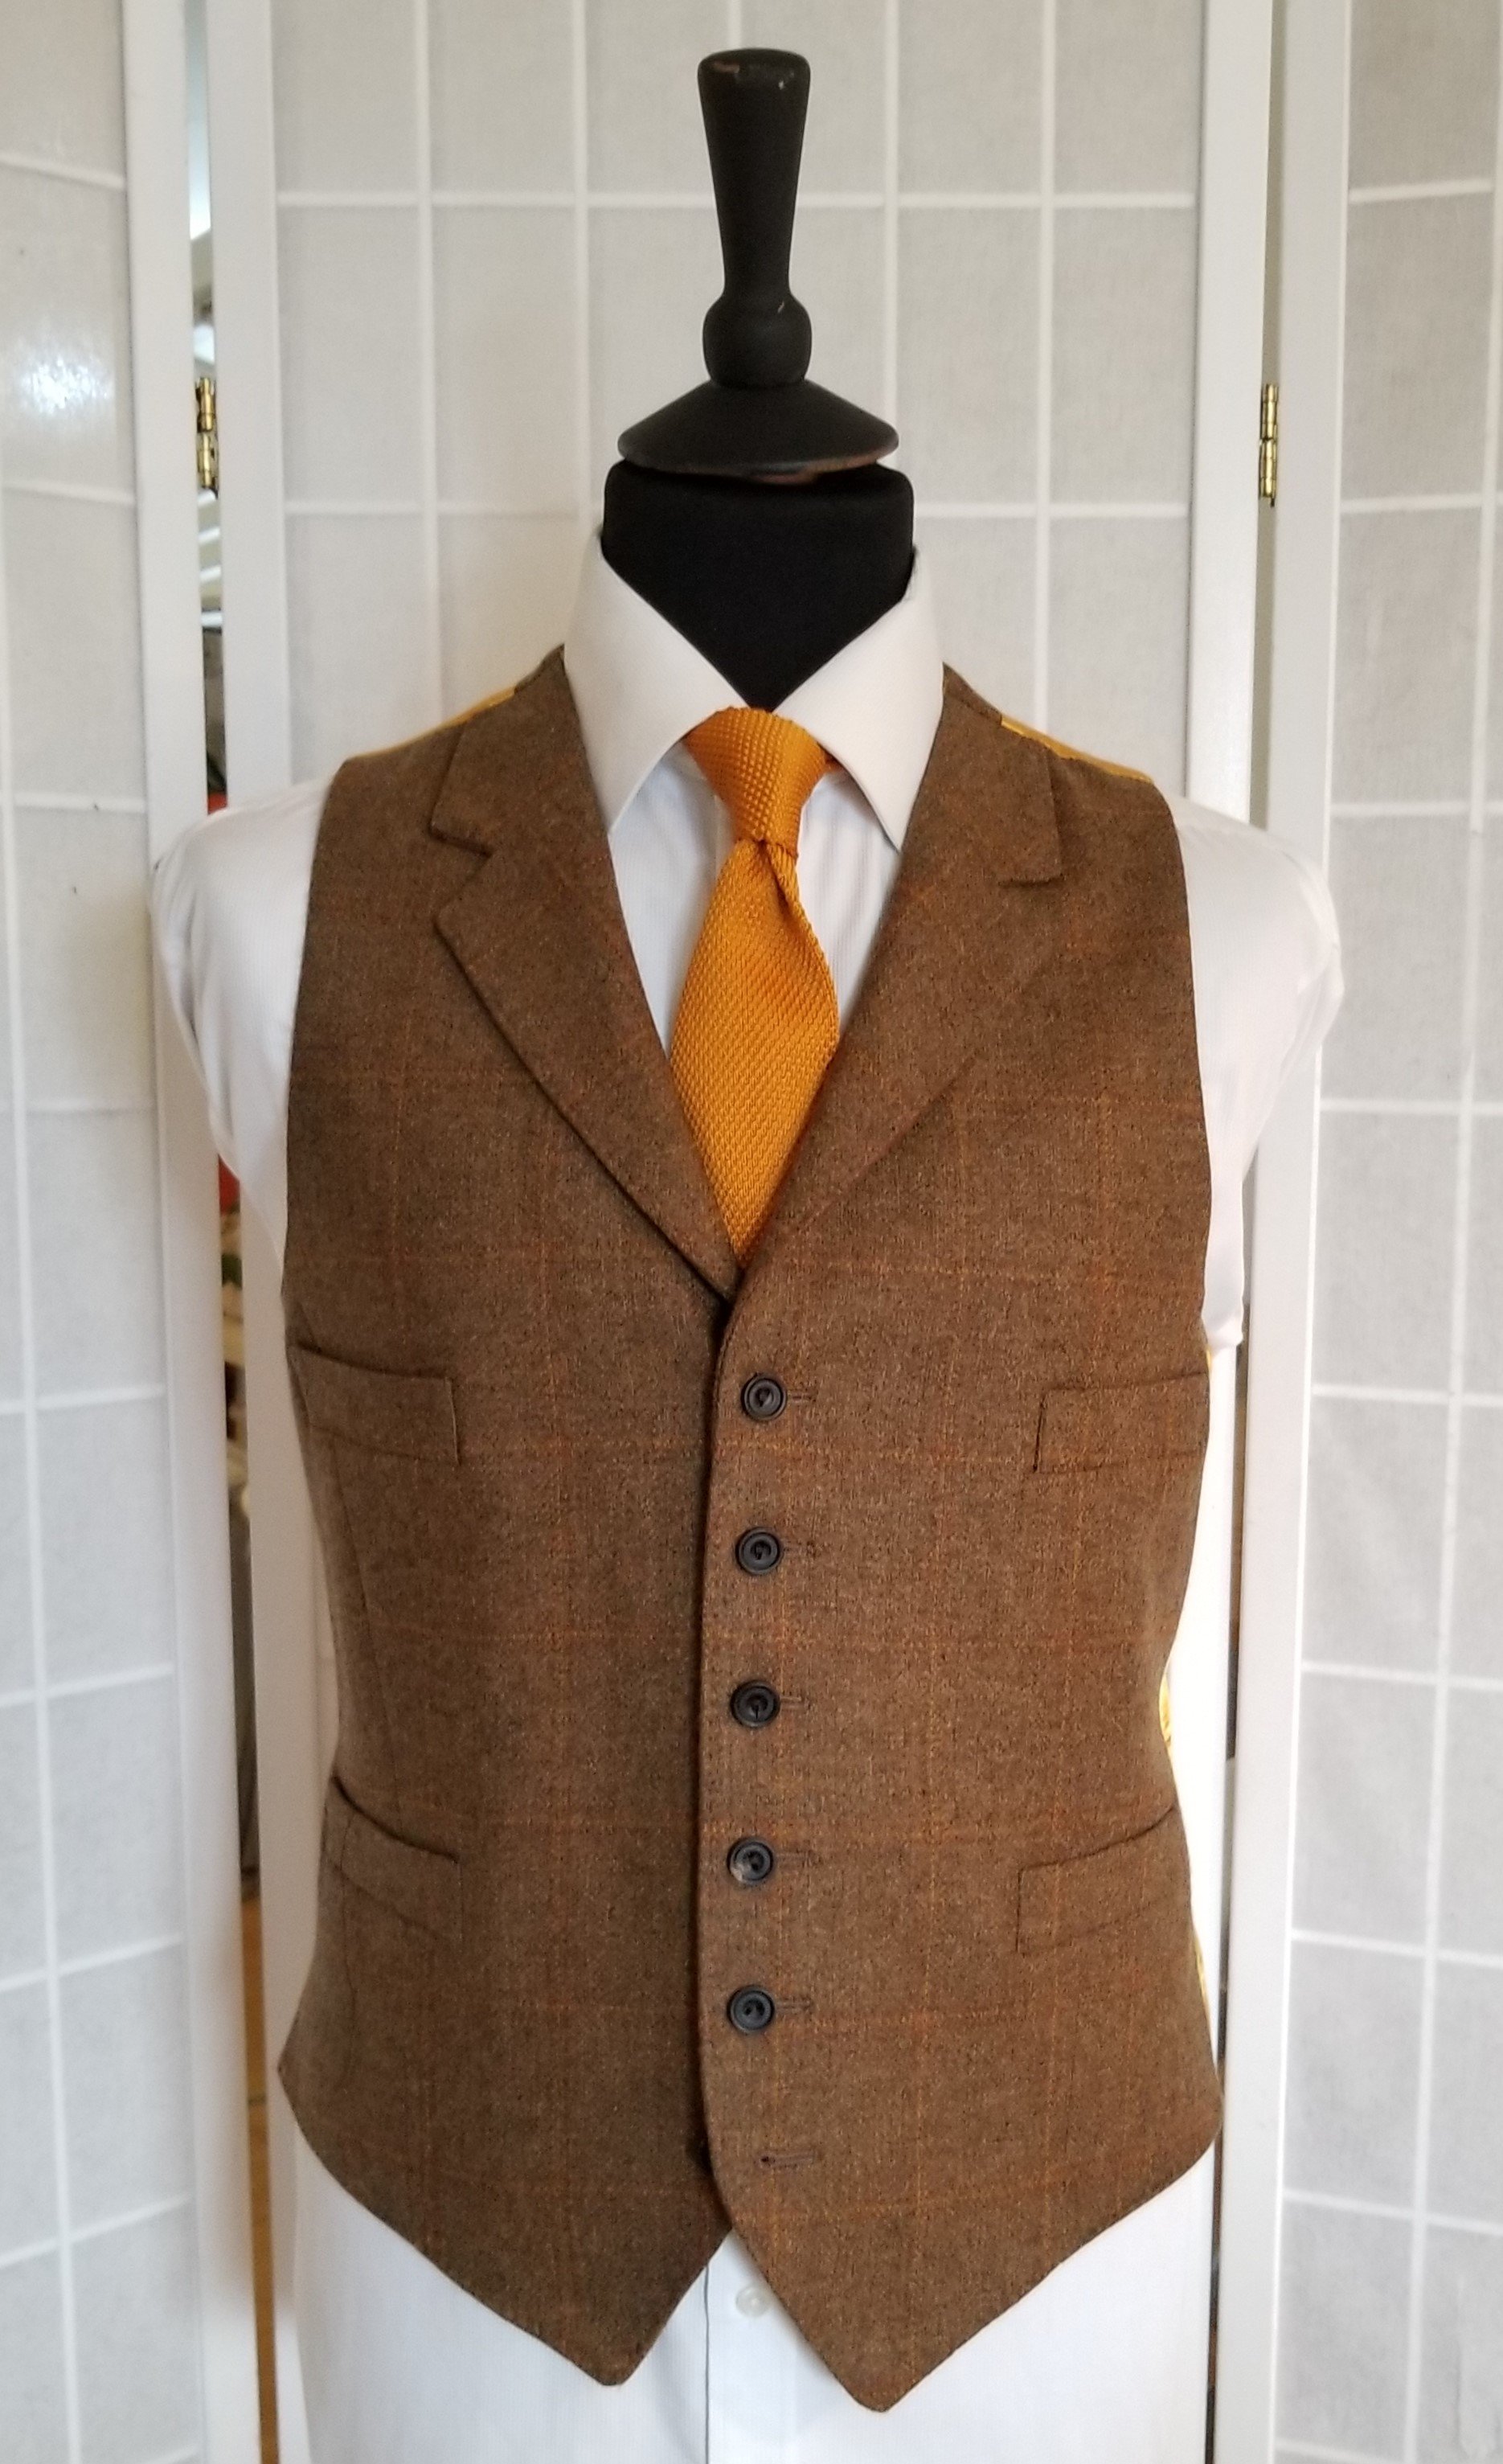 3 Piece Suit in Brown Check Lovat Mill Tweed (12).jpg